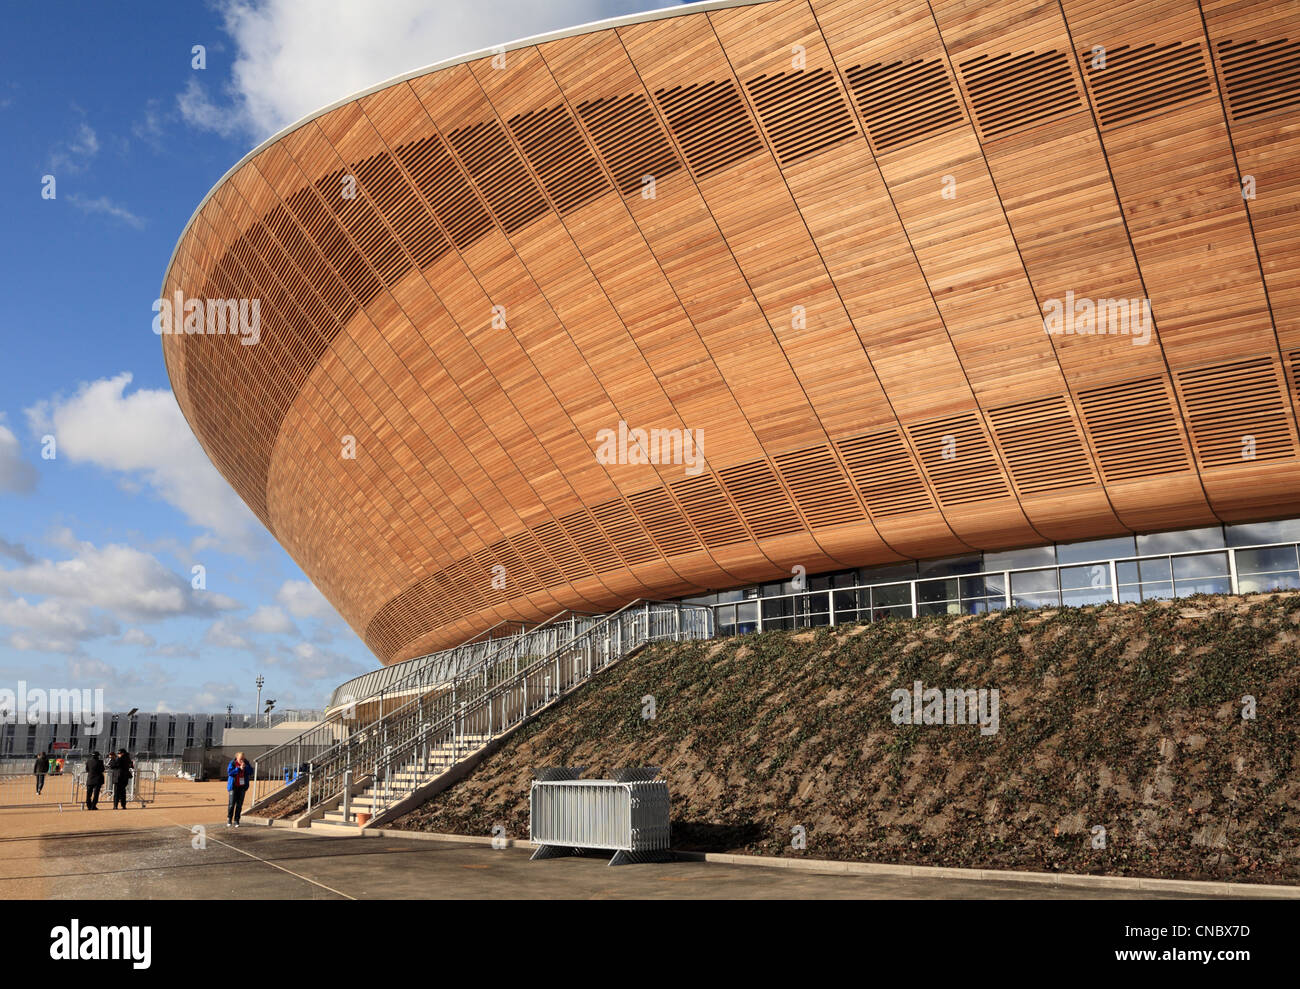 Détail du Vélodrome du parc Olympique Stratford Londres jeux olympiques 2012 Jeux Banque D'Images